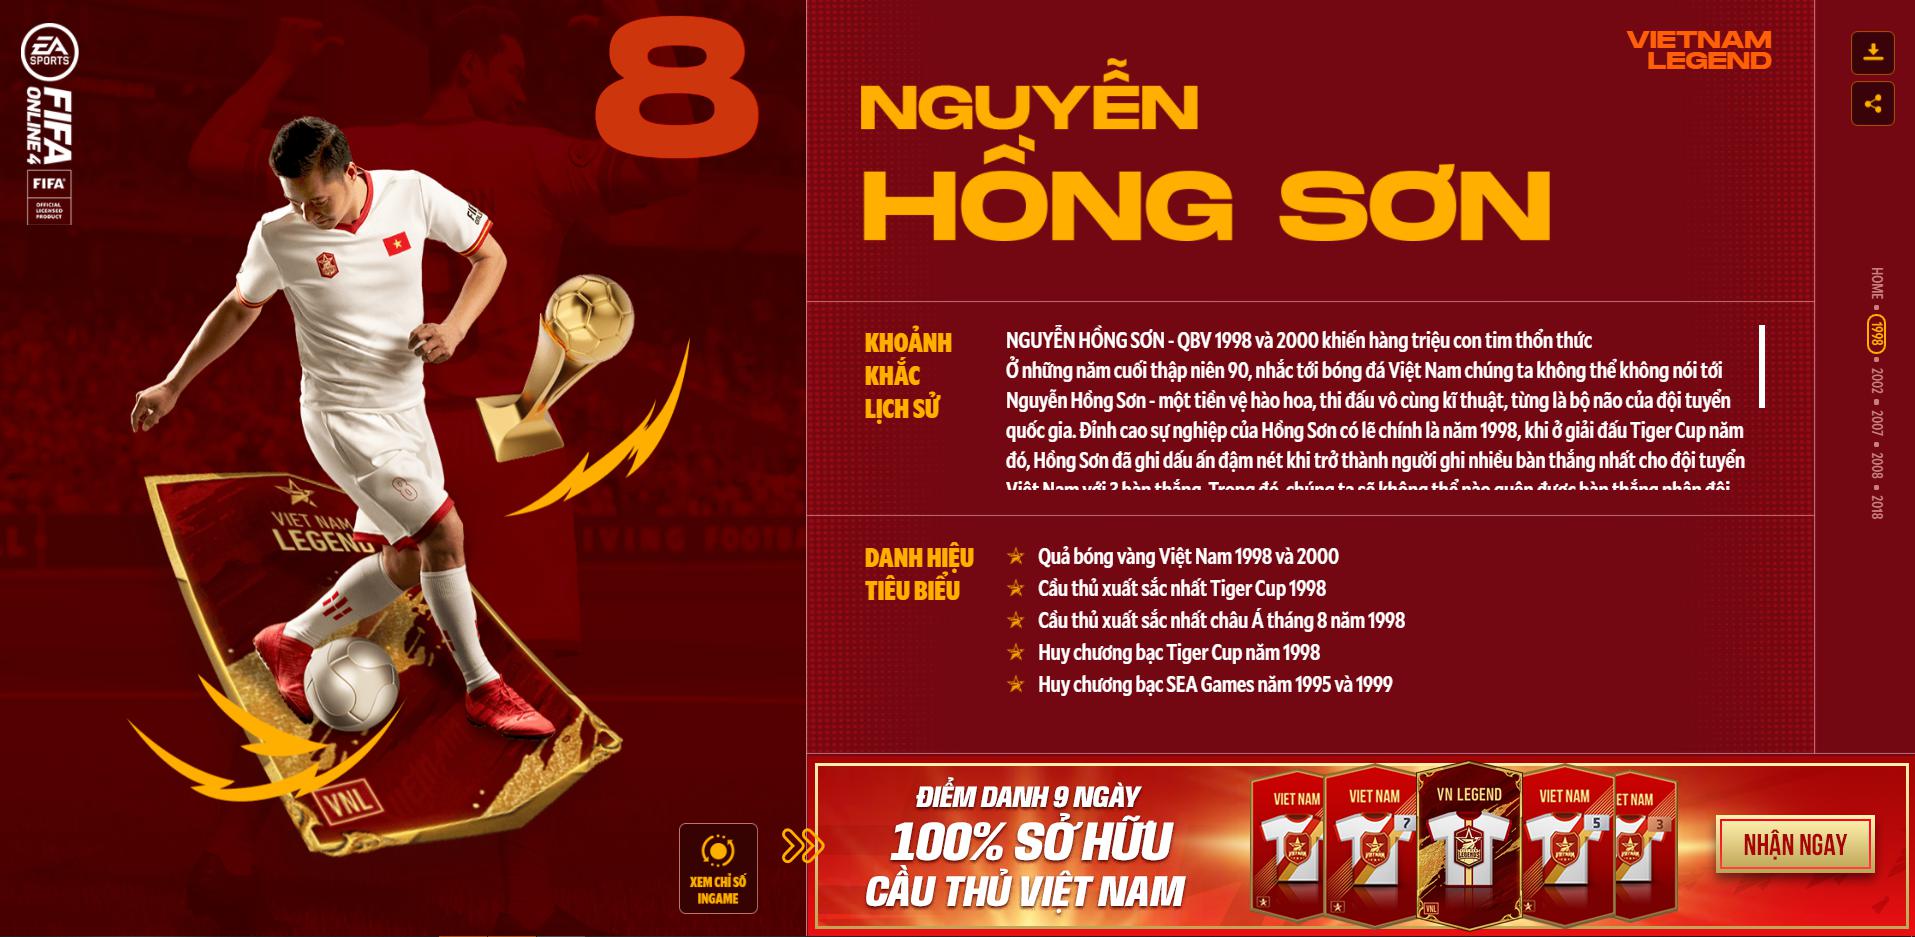 Hồng Sơn và các huyền thoại bóng đá Việt Nam bất ngờ xuất hiện trong FIFA Online 4 - Ảnh 2.